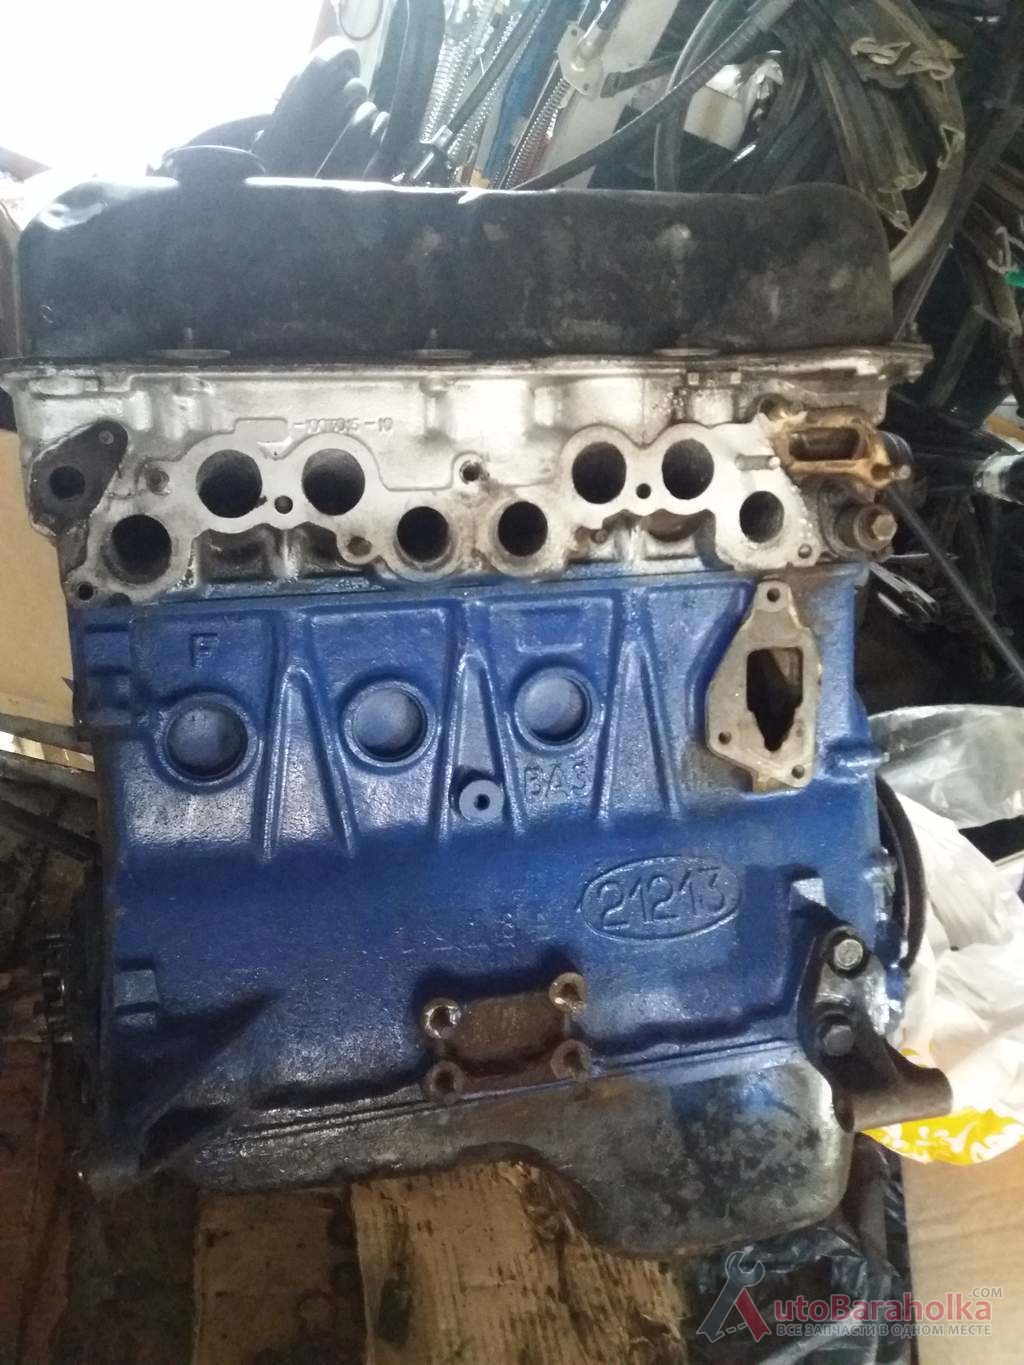 Продам Двигатель ВАЗ нива 21213 из Польши, стандарт. Проверенный, без выработки, готов к установке Полтава